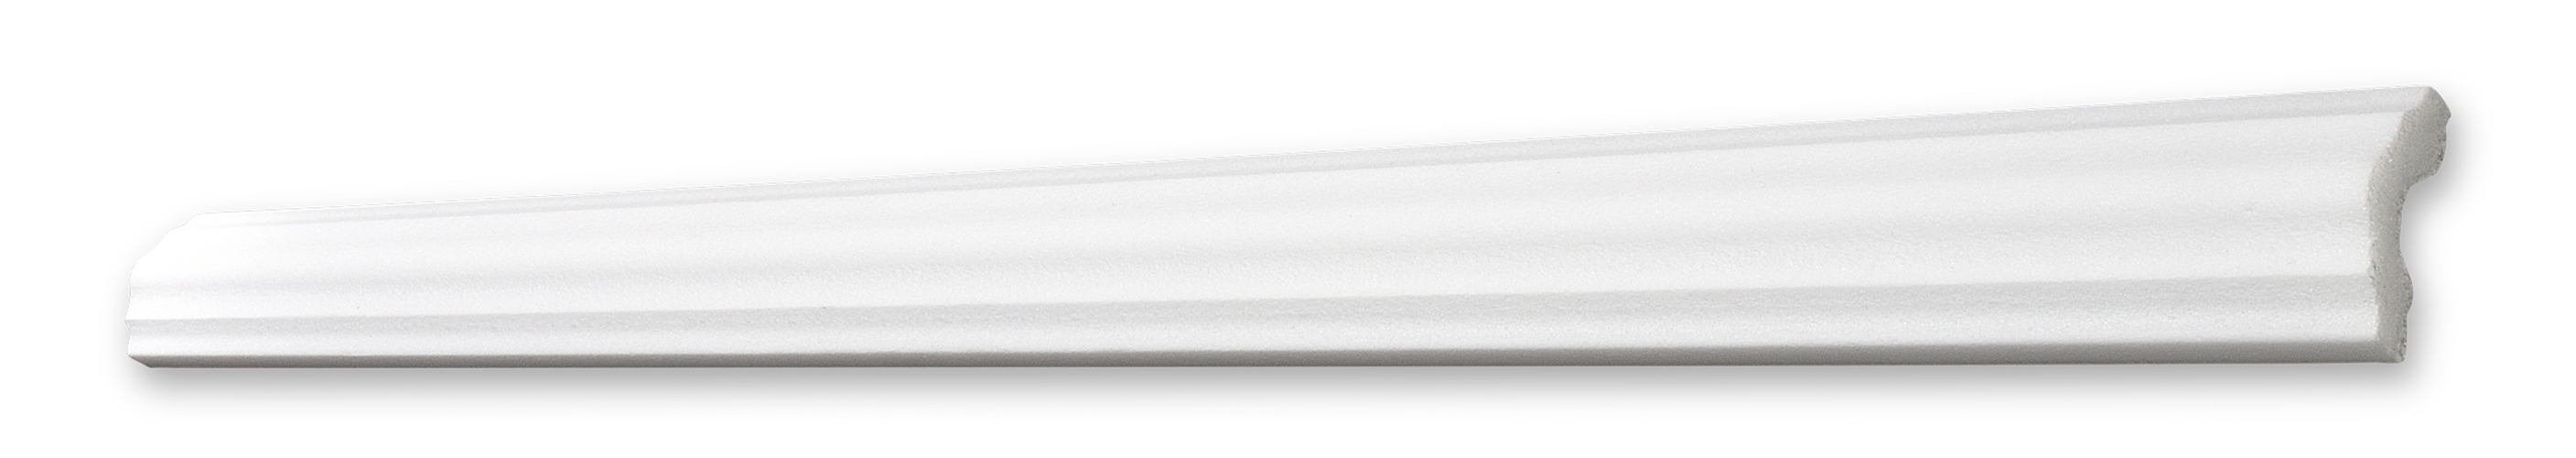 DECOSA Cimaise I40 - polystyrène - blanc - 40 mm - longueur 2 m